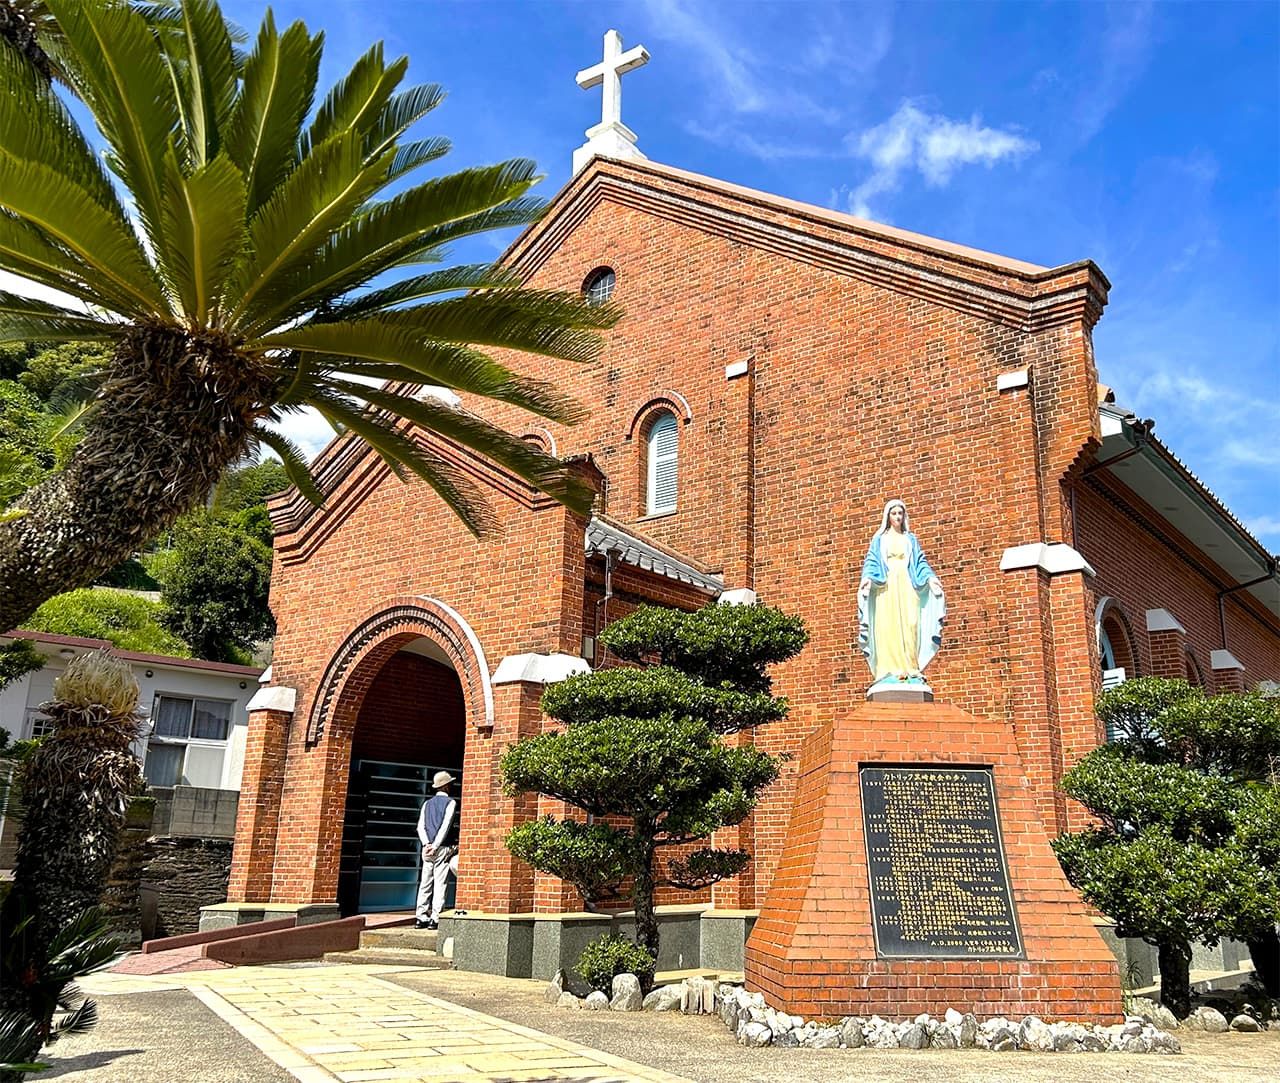 L’église de Kurosaki, en briques, avec une impressionnante statue de la Vierge Marie debout, les bras écartés, achevée en 1920, à quelques pas de l'arrêt de bus « Église de Kurosaki » (Kurosaki-kyôkai-mae) .